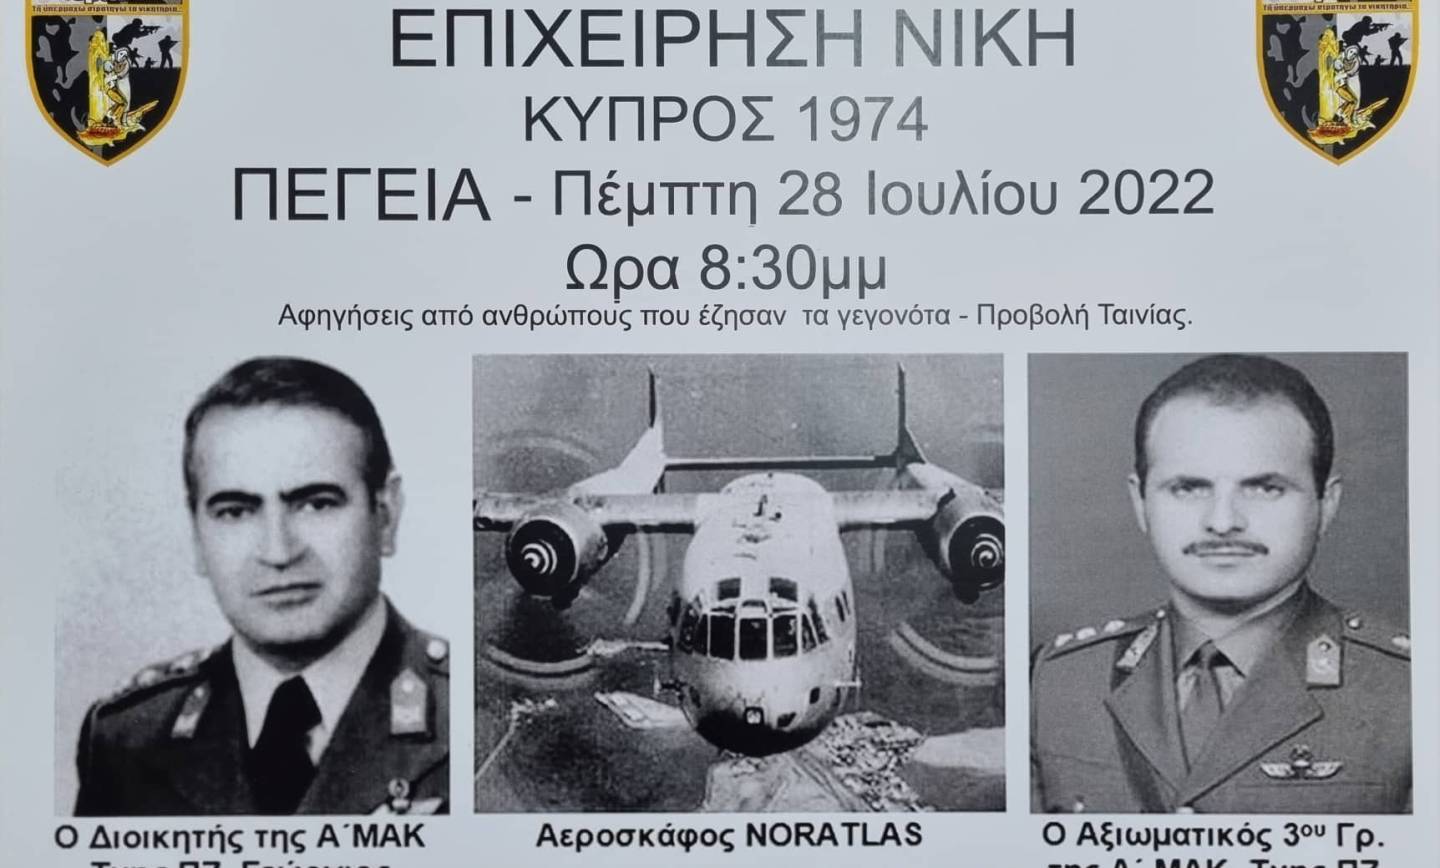 Ο Παγκύπριος Σύνδεσμος Εθνοφυλάκων, οι – ΒΕΤΕΡΑΝΟΙ 74 – και ο Δήμος Πέγειας οργανώνουν στην Βρύση των Πεγειώτισσων την Πέμπτη 28 Ιουλίου 2022 και ώρα 8:30 μ.μ. Εκδήλωση Μνήμης και Τιμής της αποστολής που έγινε το 1974 από τη Κρήτη στην Κύπρο με τα αεροπλάνα ΝΟΡΑΤΛΑΣ,ΕΠΕΙΧΕΙΡΙΣΗ -ΝΙΚΗ-!